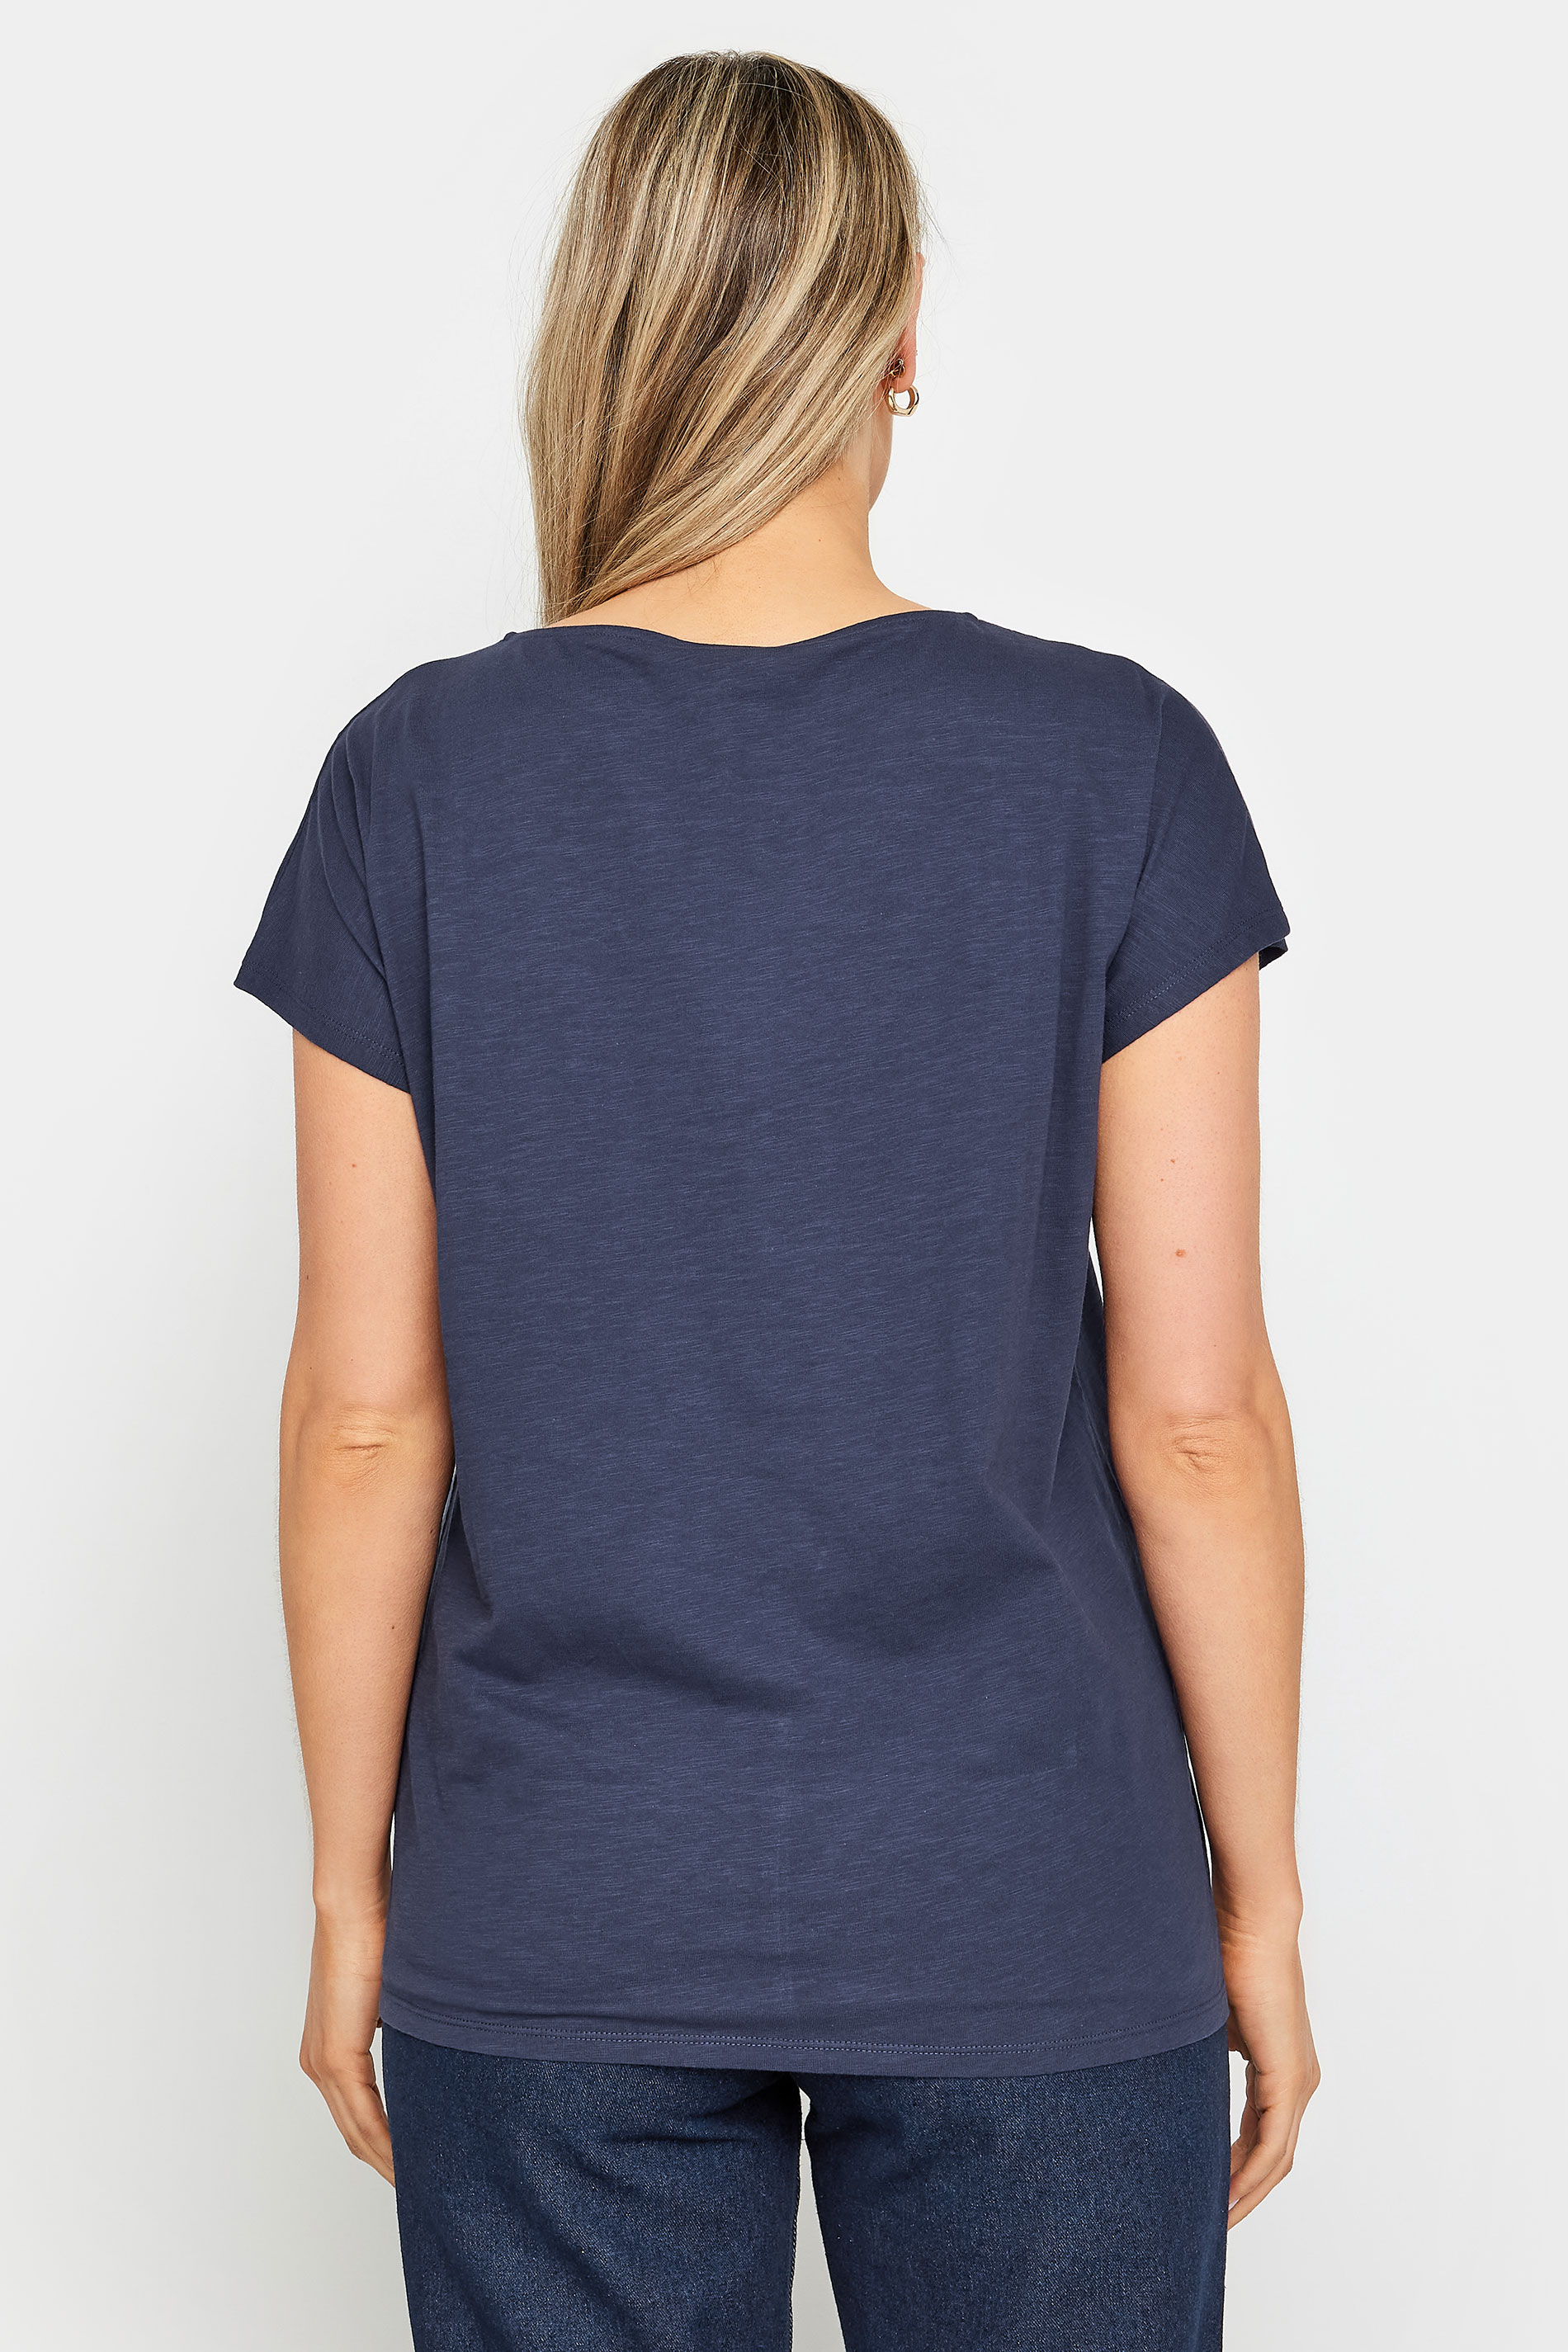 LTS Tall Womens Dark Blue Short Sleeve T-Shirt | Long Tall Sally 3